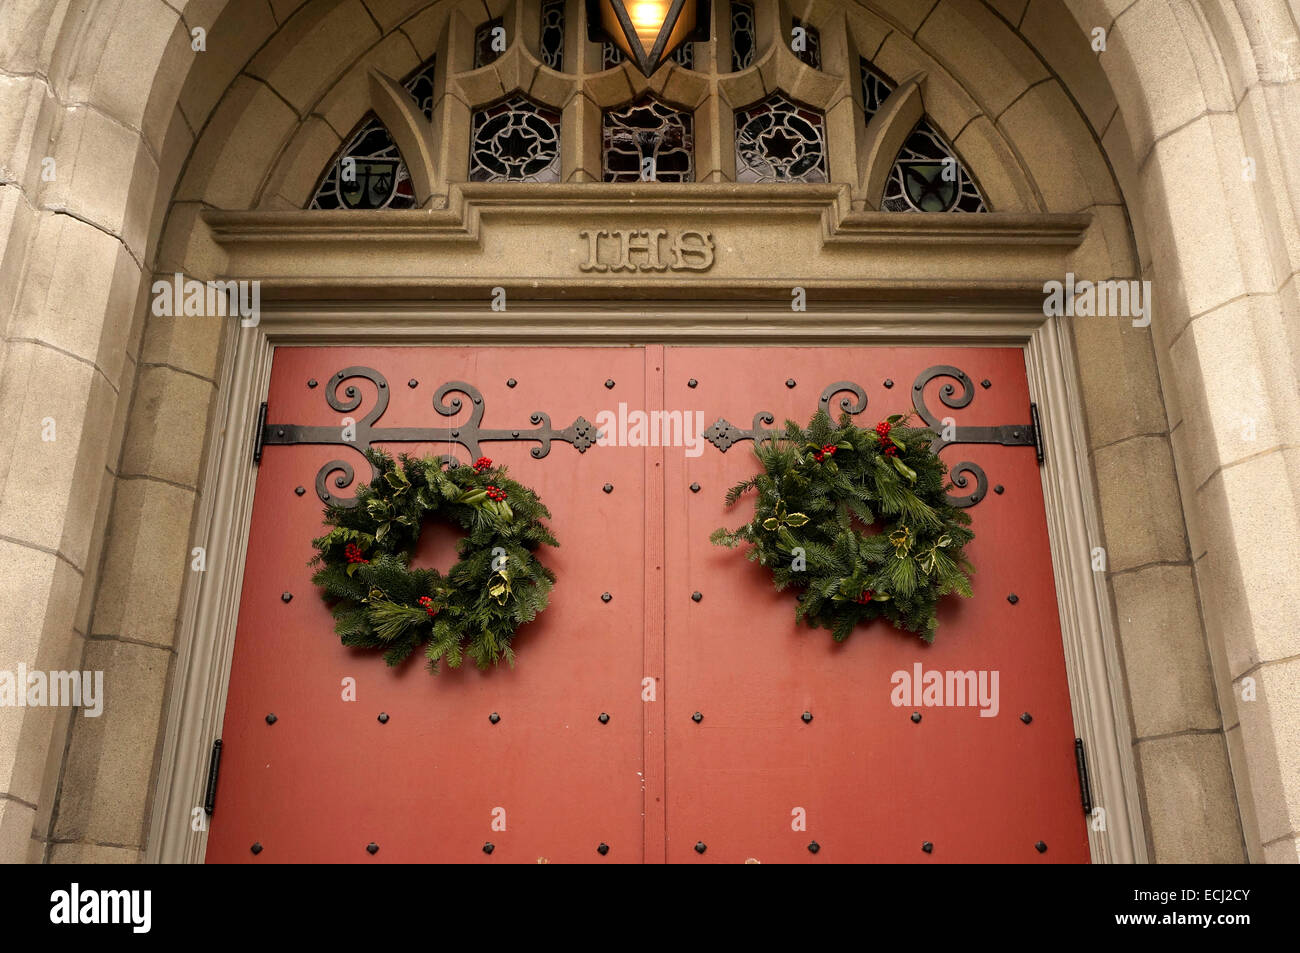 Vert et Rouge traditionnelle couronne de Noël accroché sur la porte de l'Église Unie du Canada, Vancouver, BC, Canada Banque D'Images